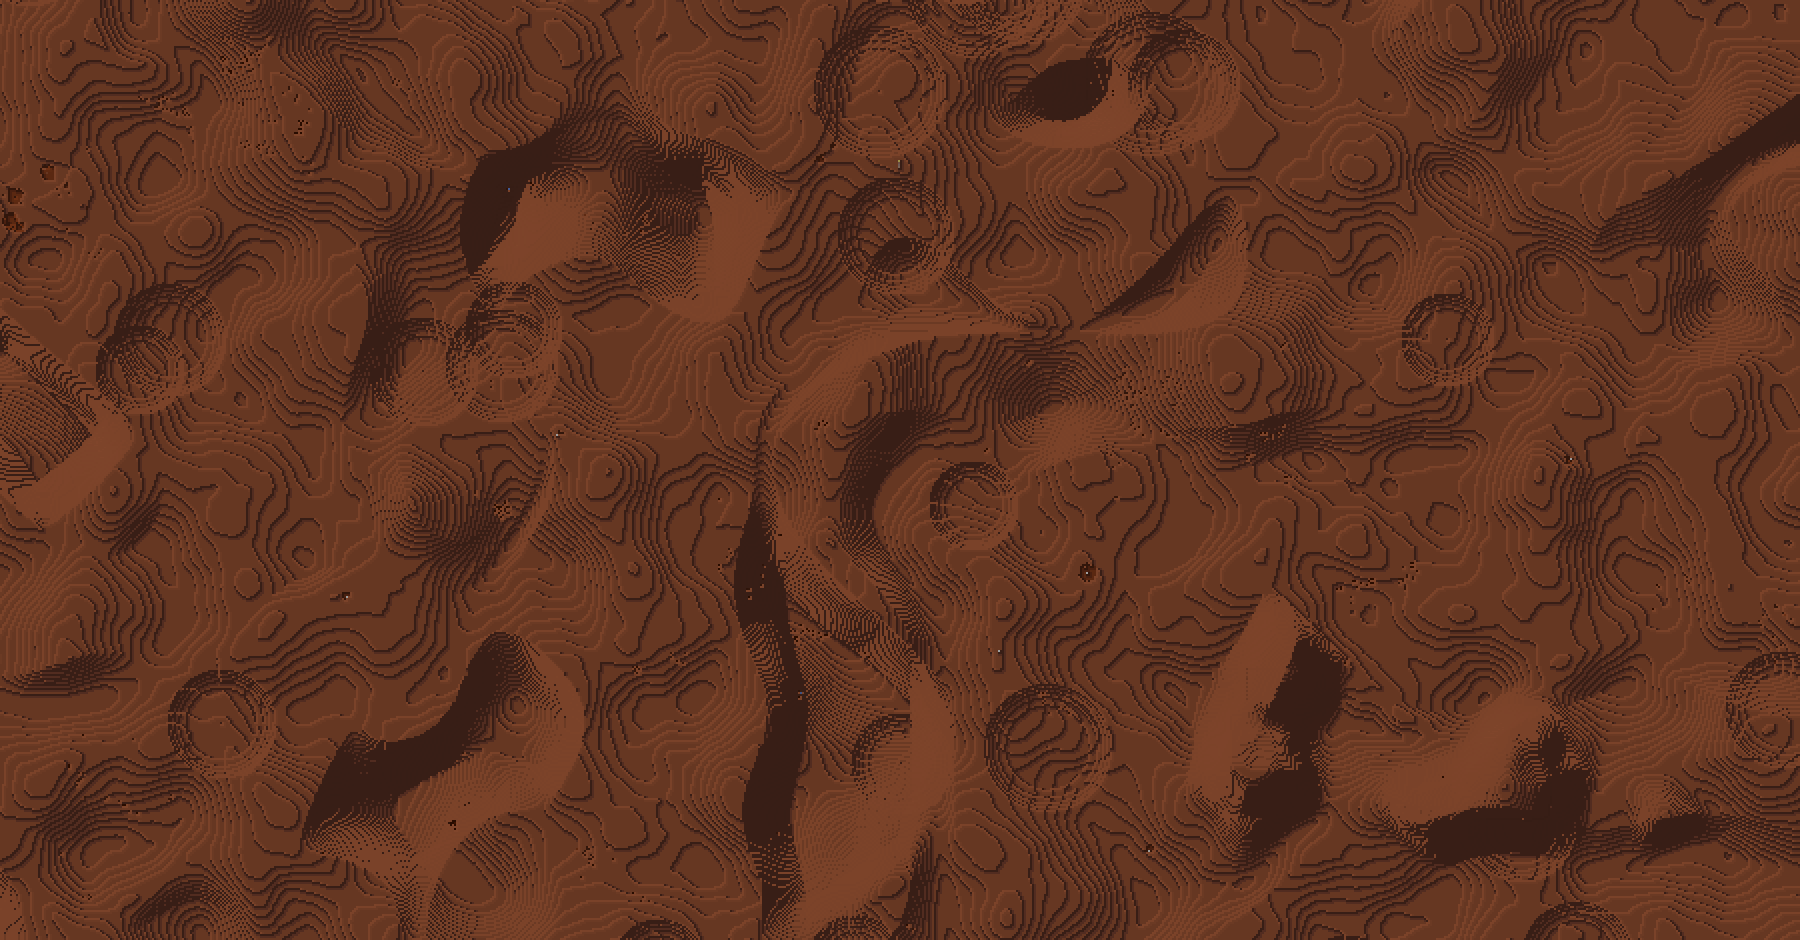 Mars_terrain.png